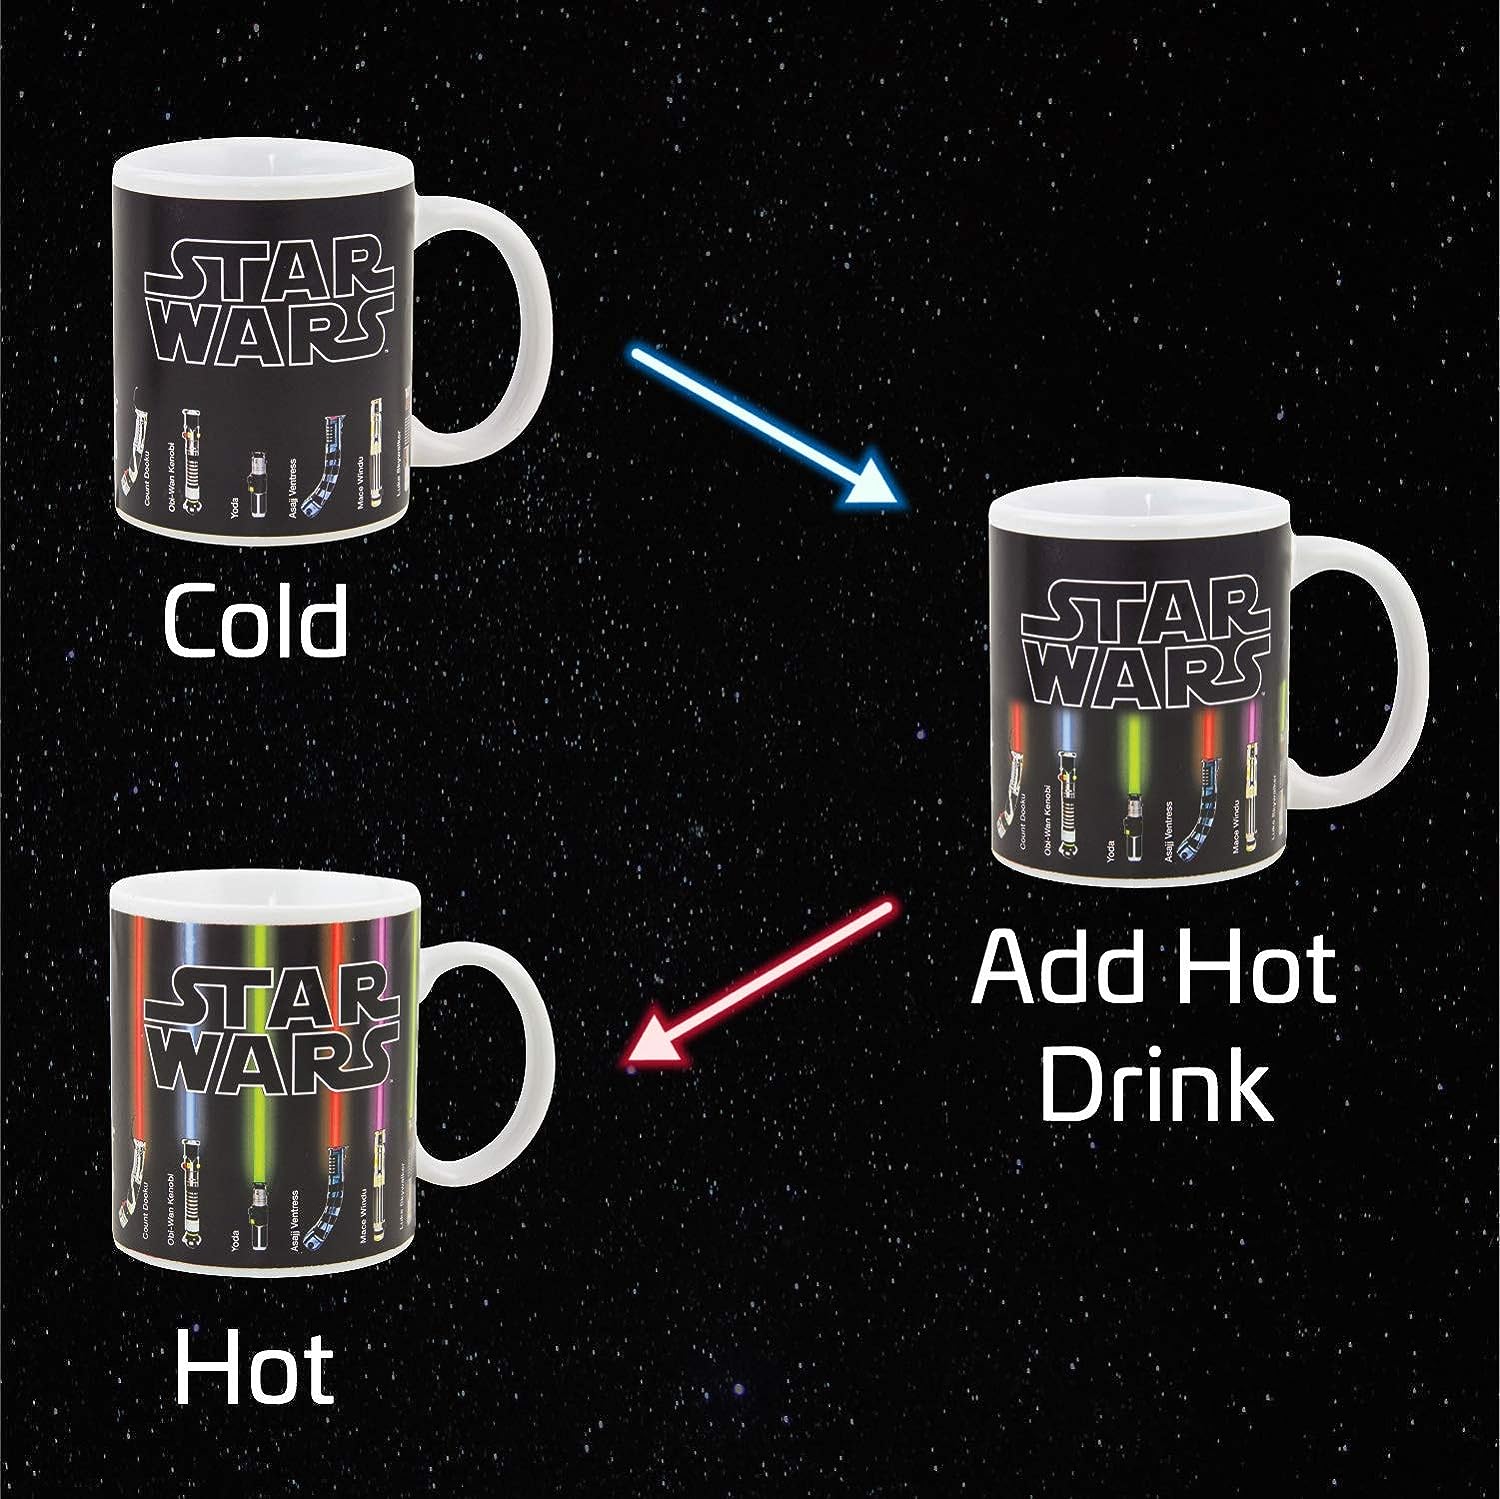 Star Wars Heat Change Mug - Zhivago Gifts